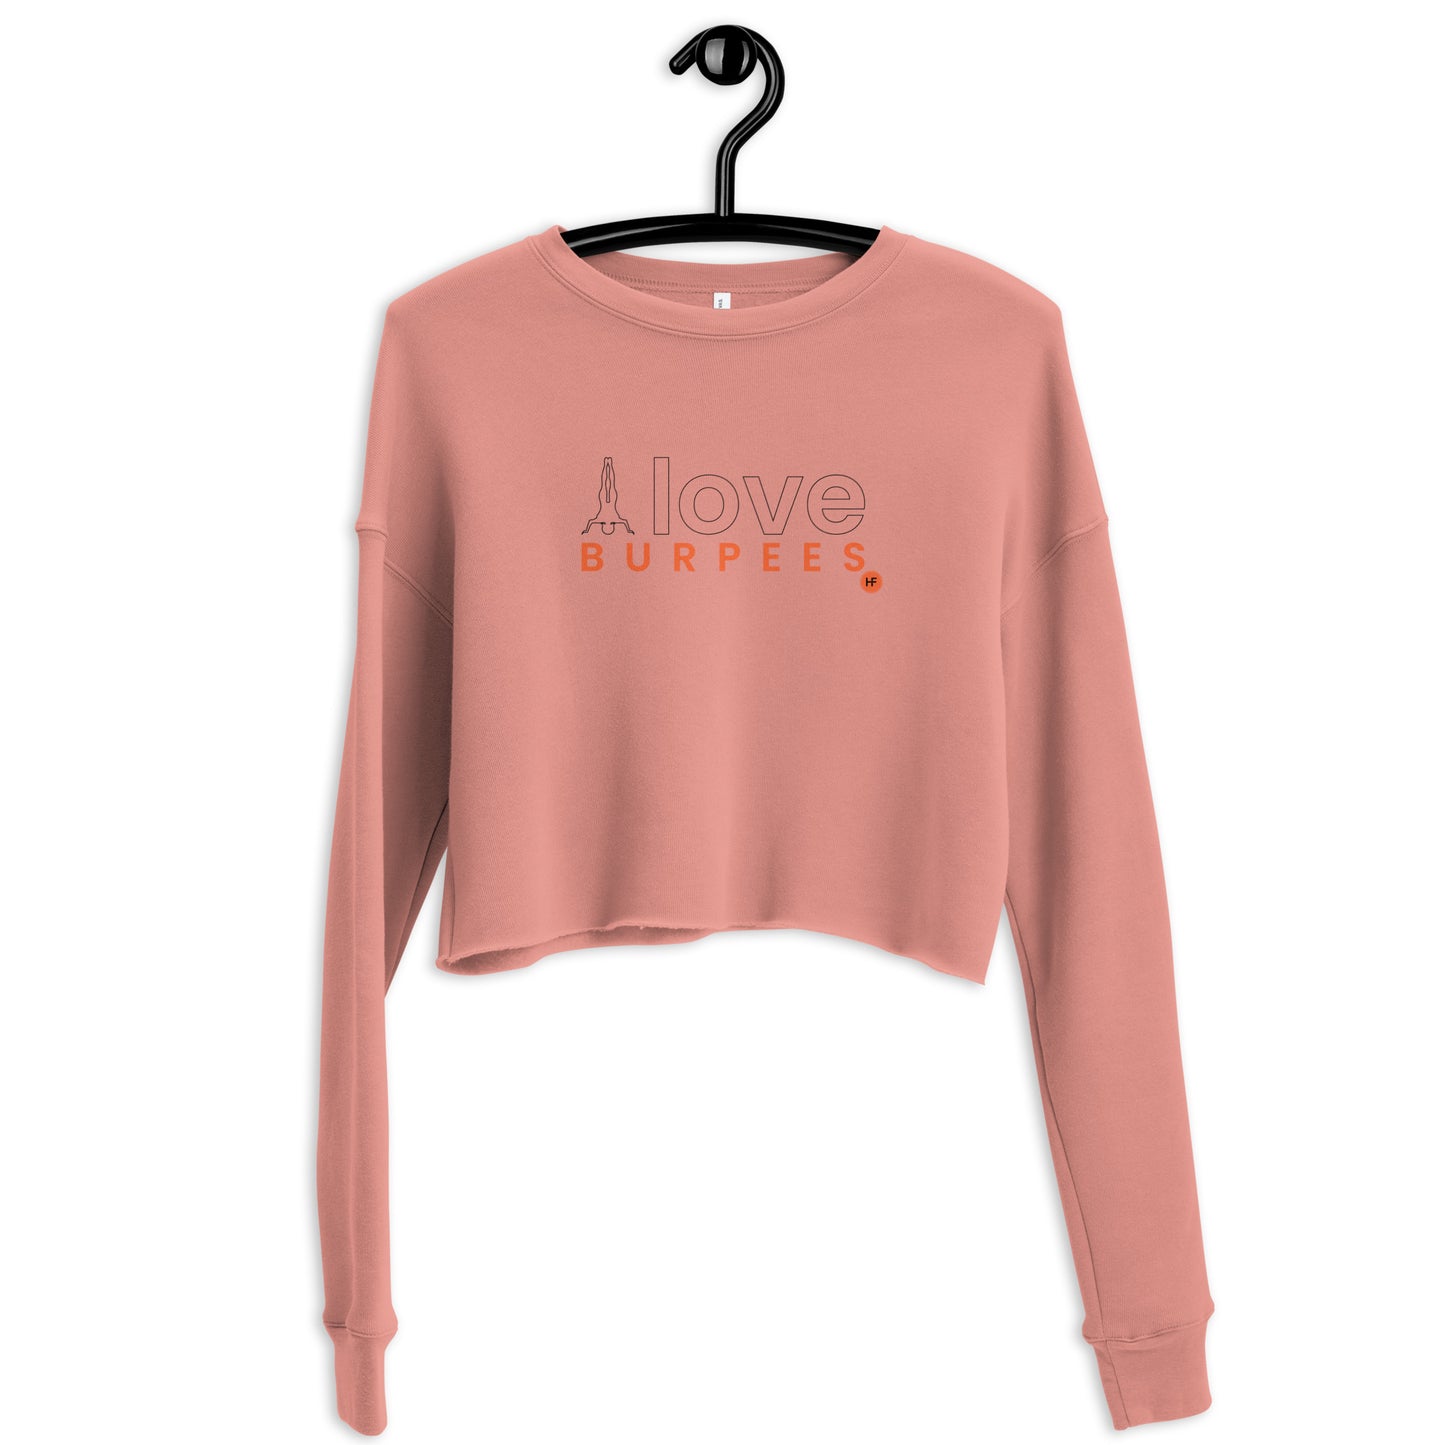 I Love Burpees Ladies Crop Sweatshirt